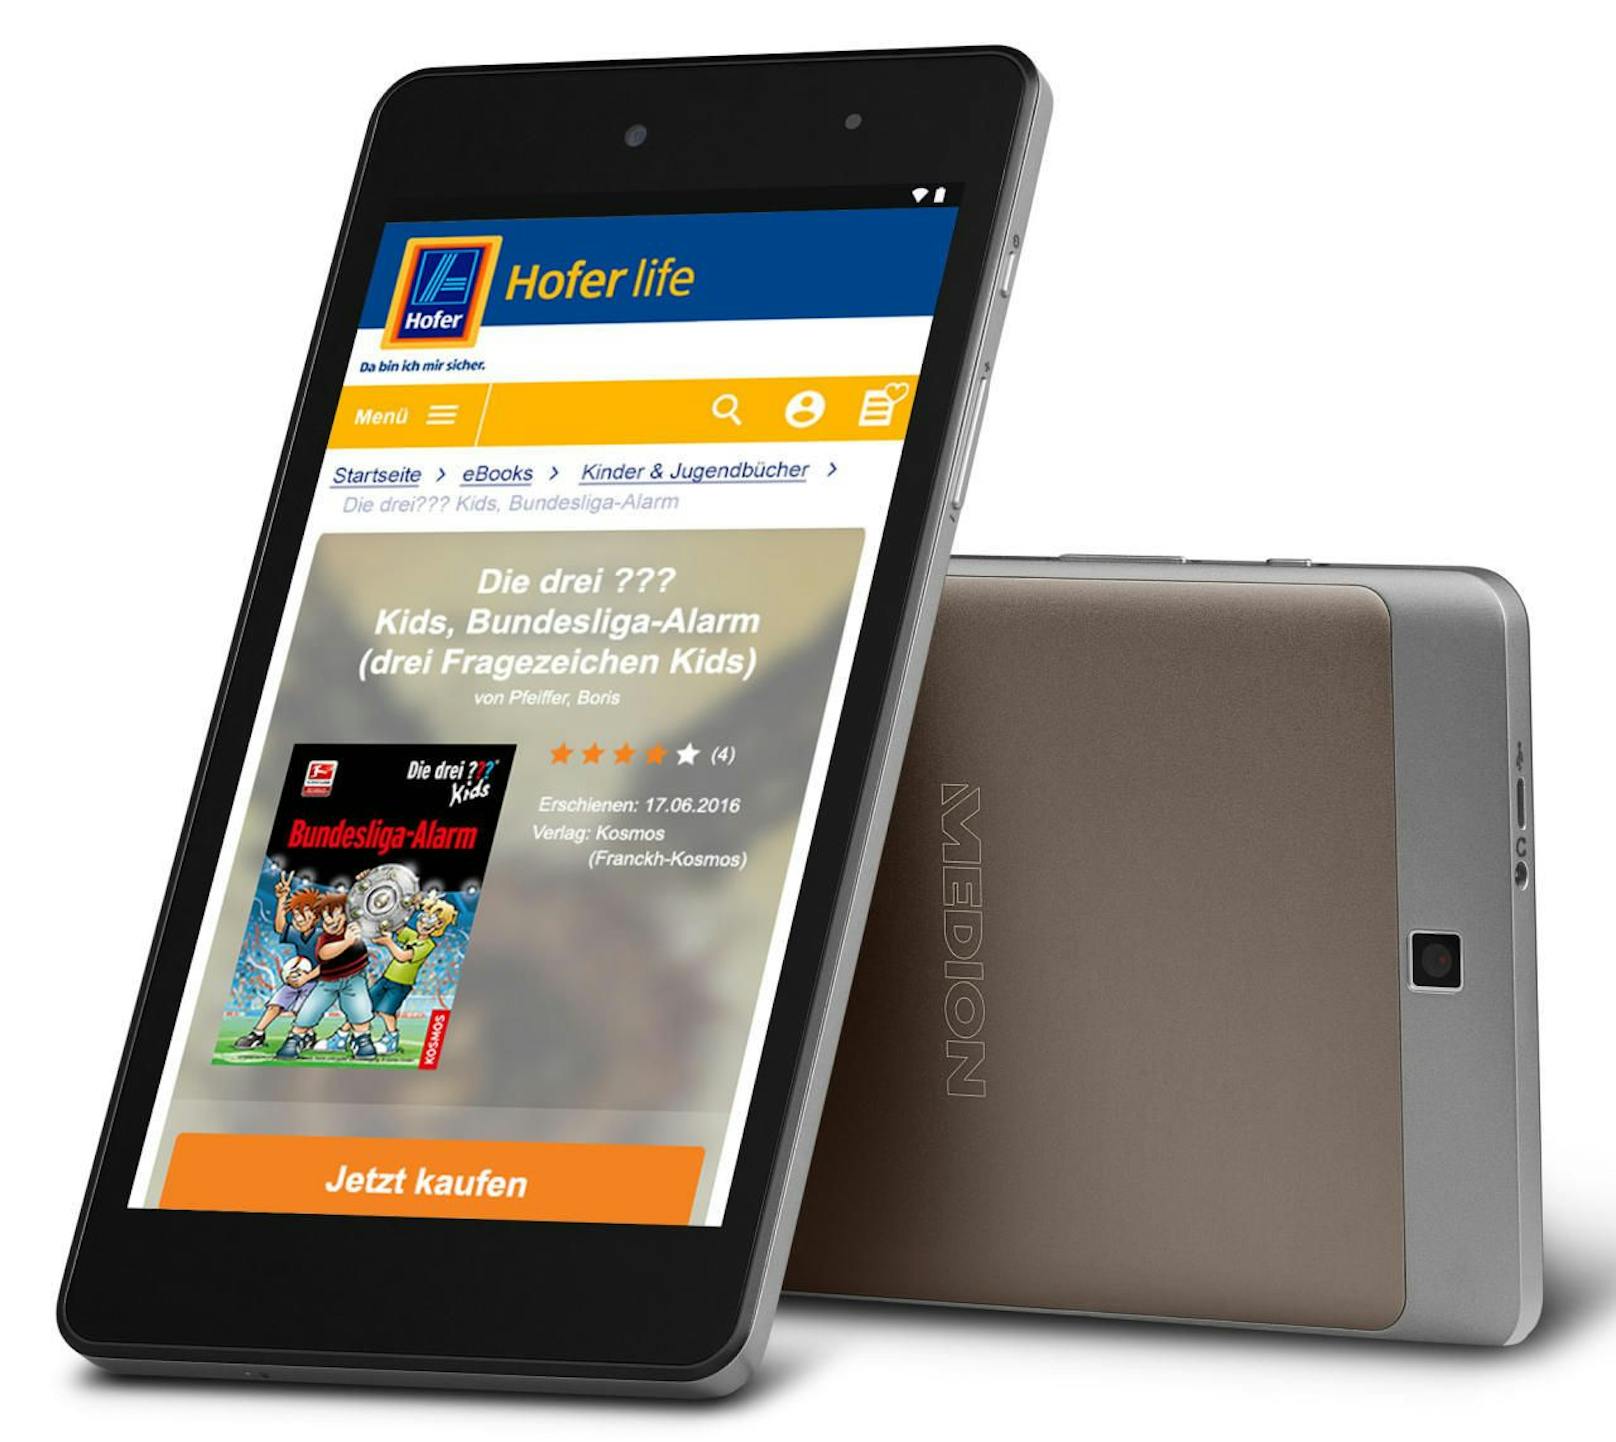 Zum Start bietet Hofer ein eigenes Medion-Tablet mit E-Book-Reader-Funktion an.